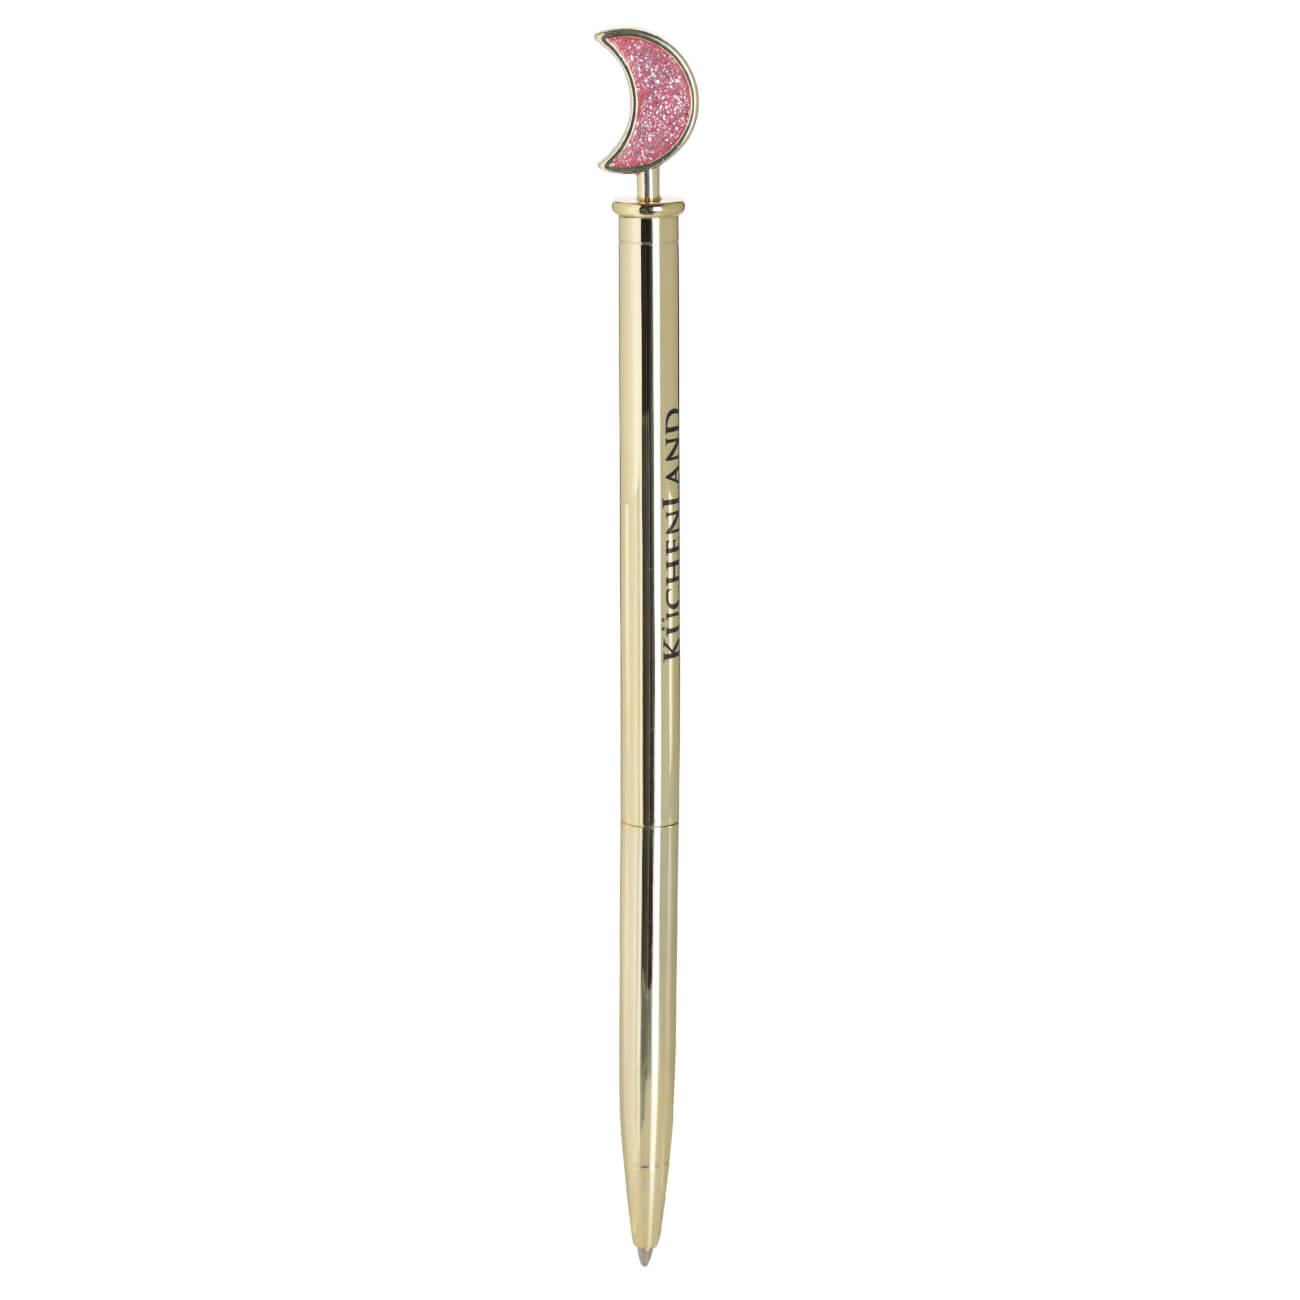 Ручка шариковая, 15 см, с фигуркой, металл, золотистая, Луна, Draw figure шариковая ручка waterman hemisphere s0921310 s0921310